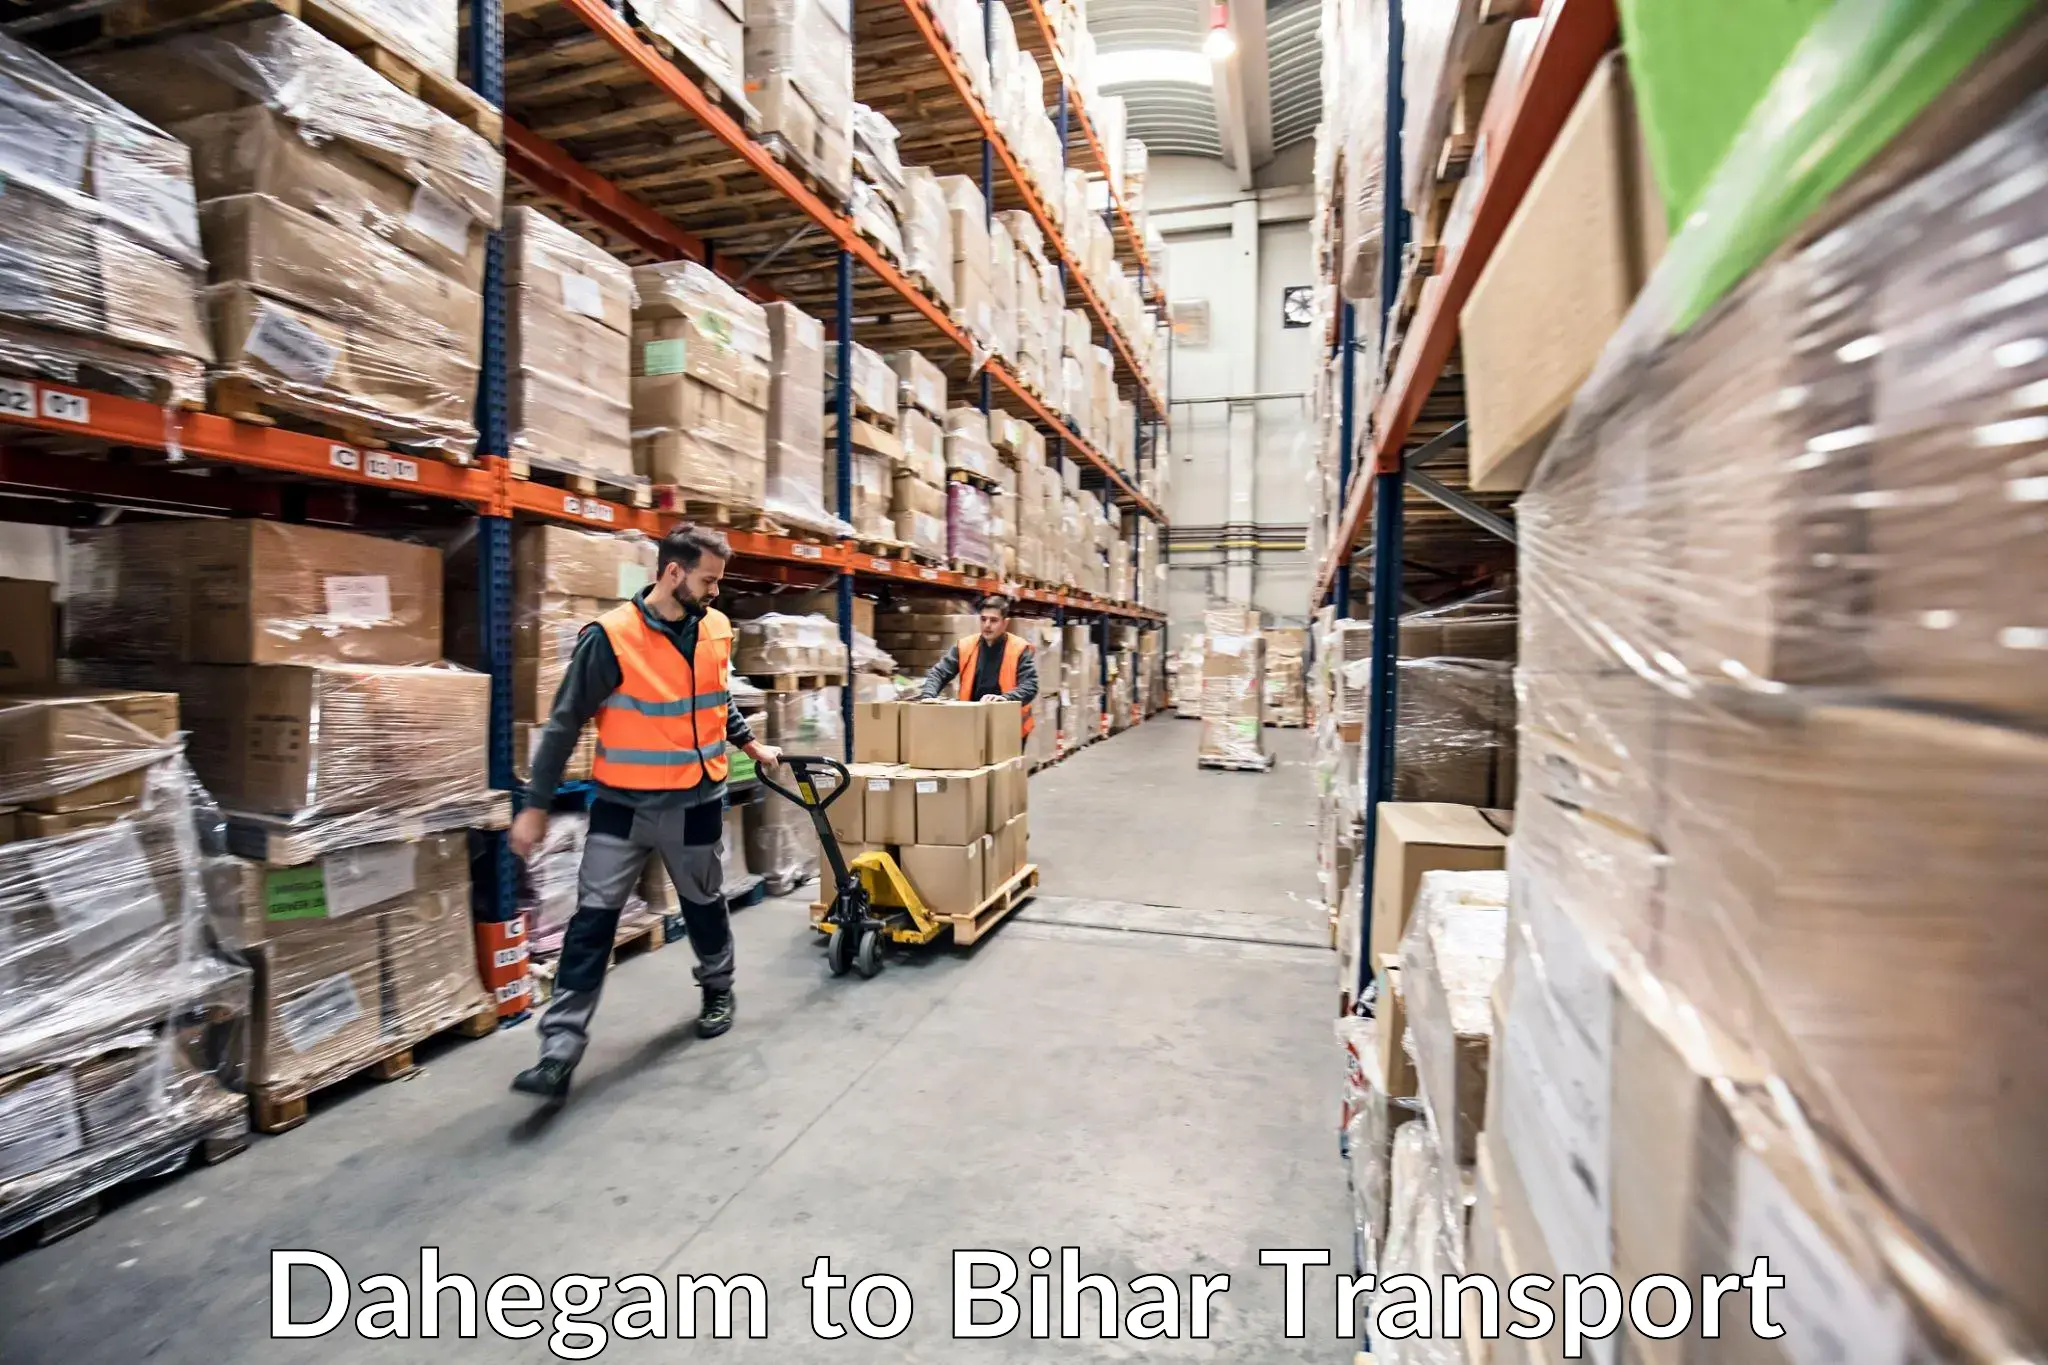 Cargo transportation services Dahegam to Bihar